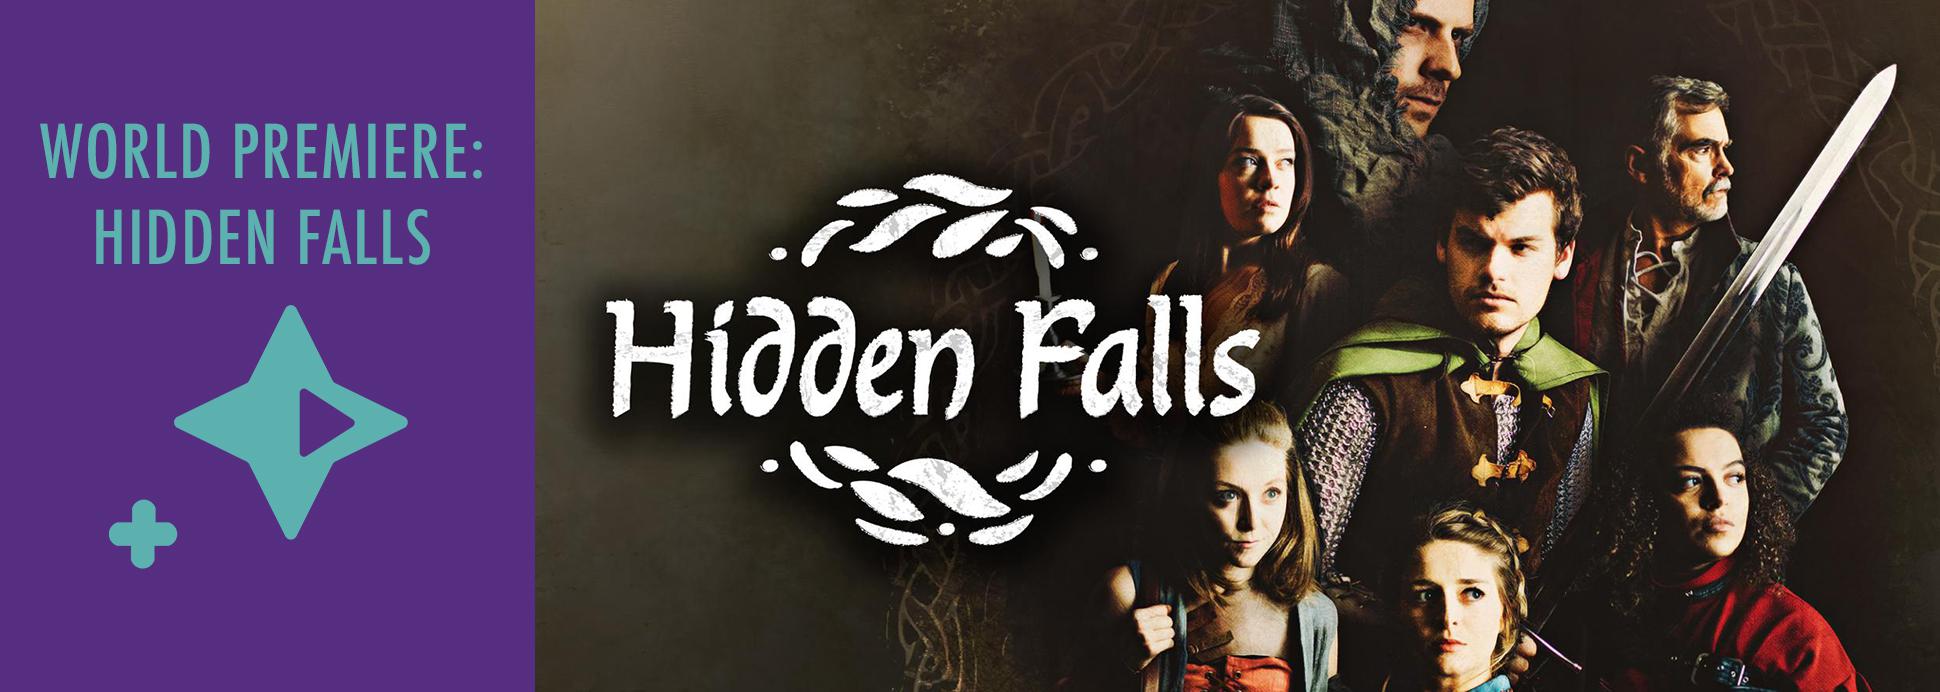 World Premiere: Hidden Falls